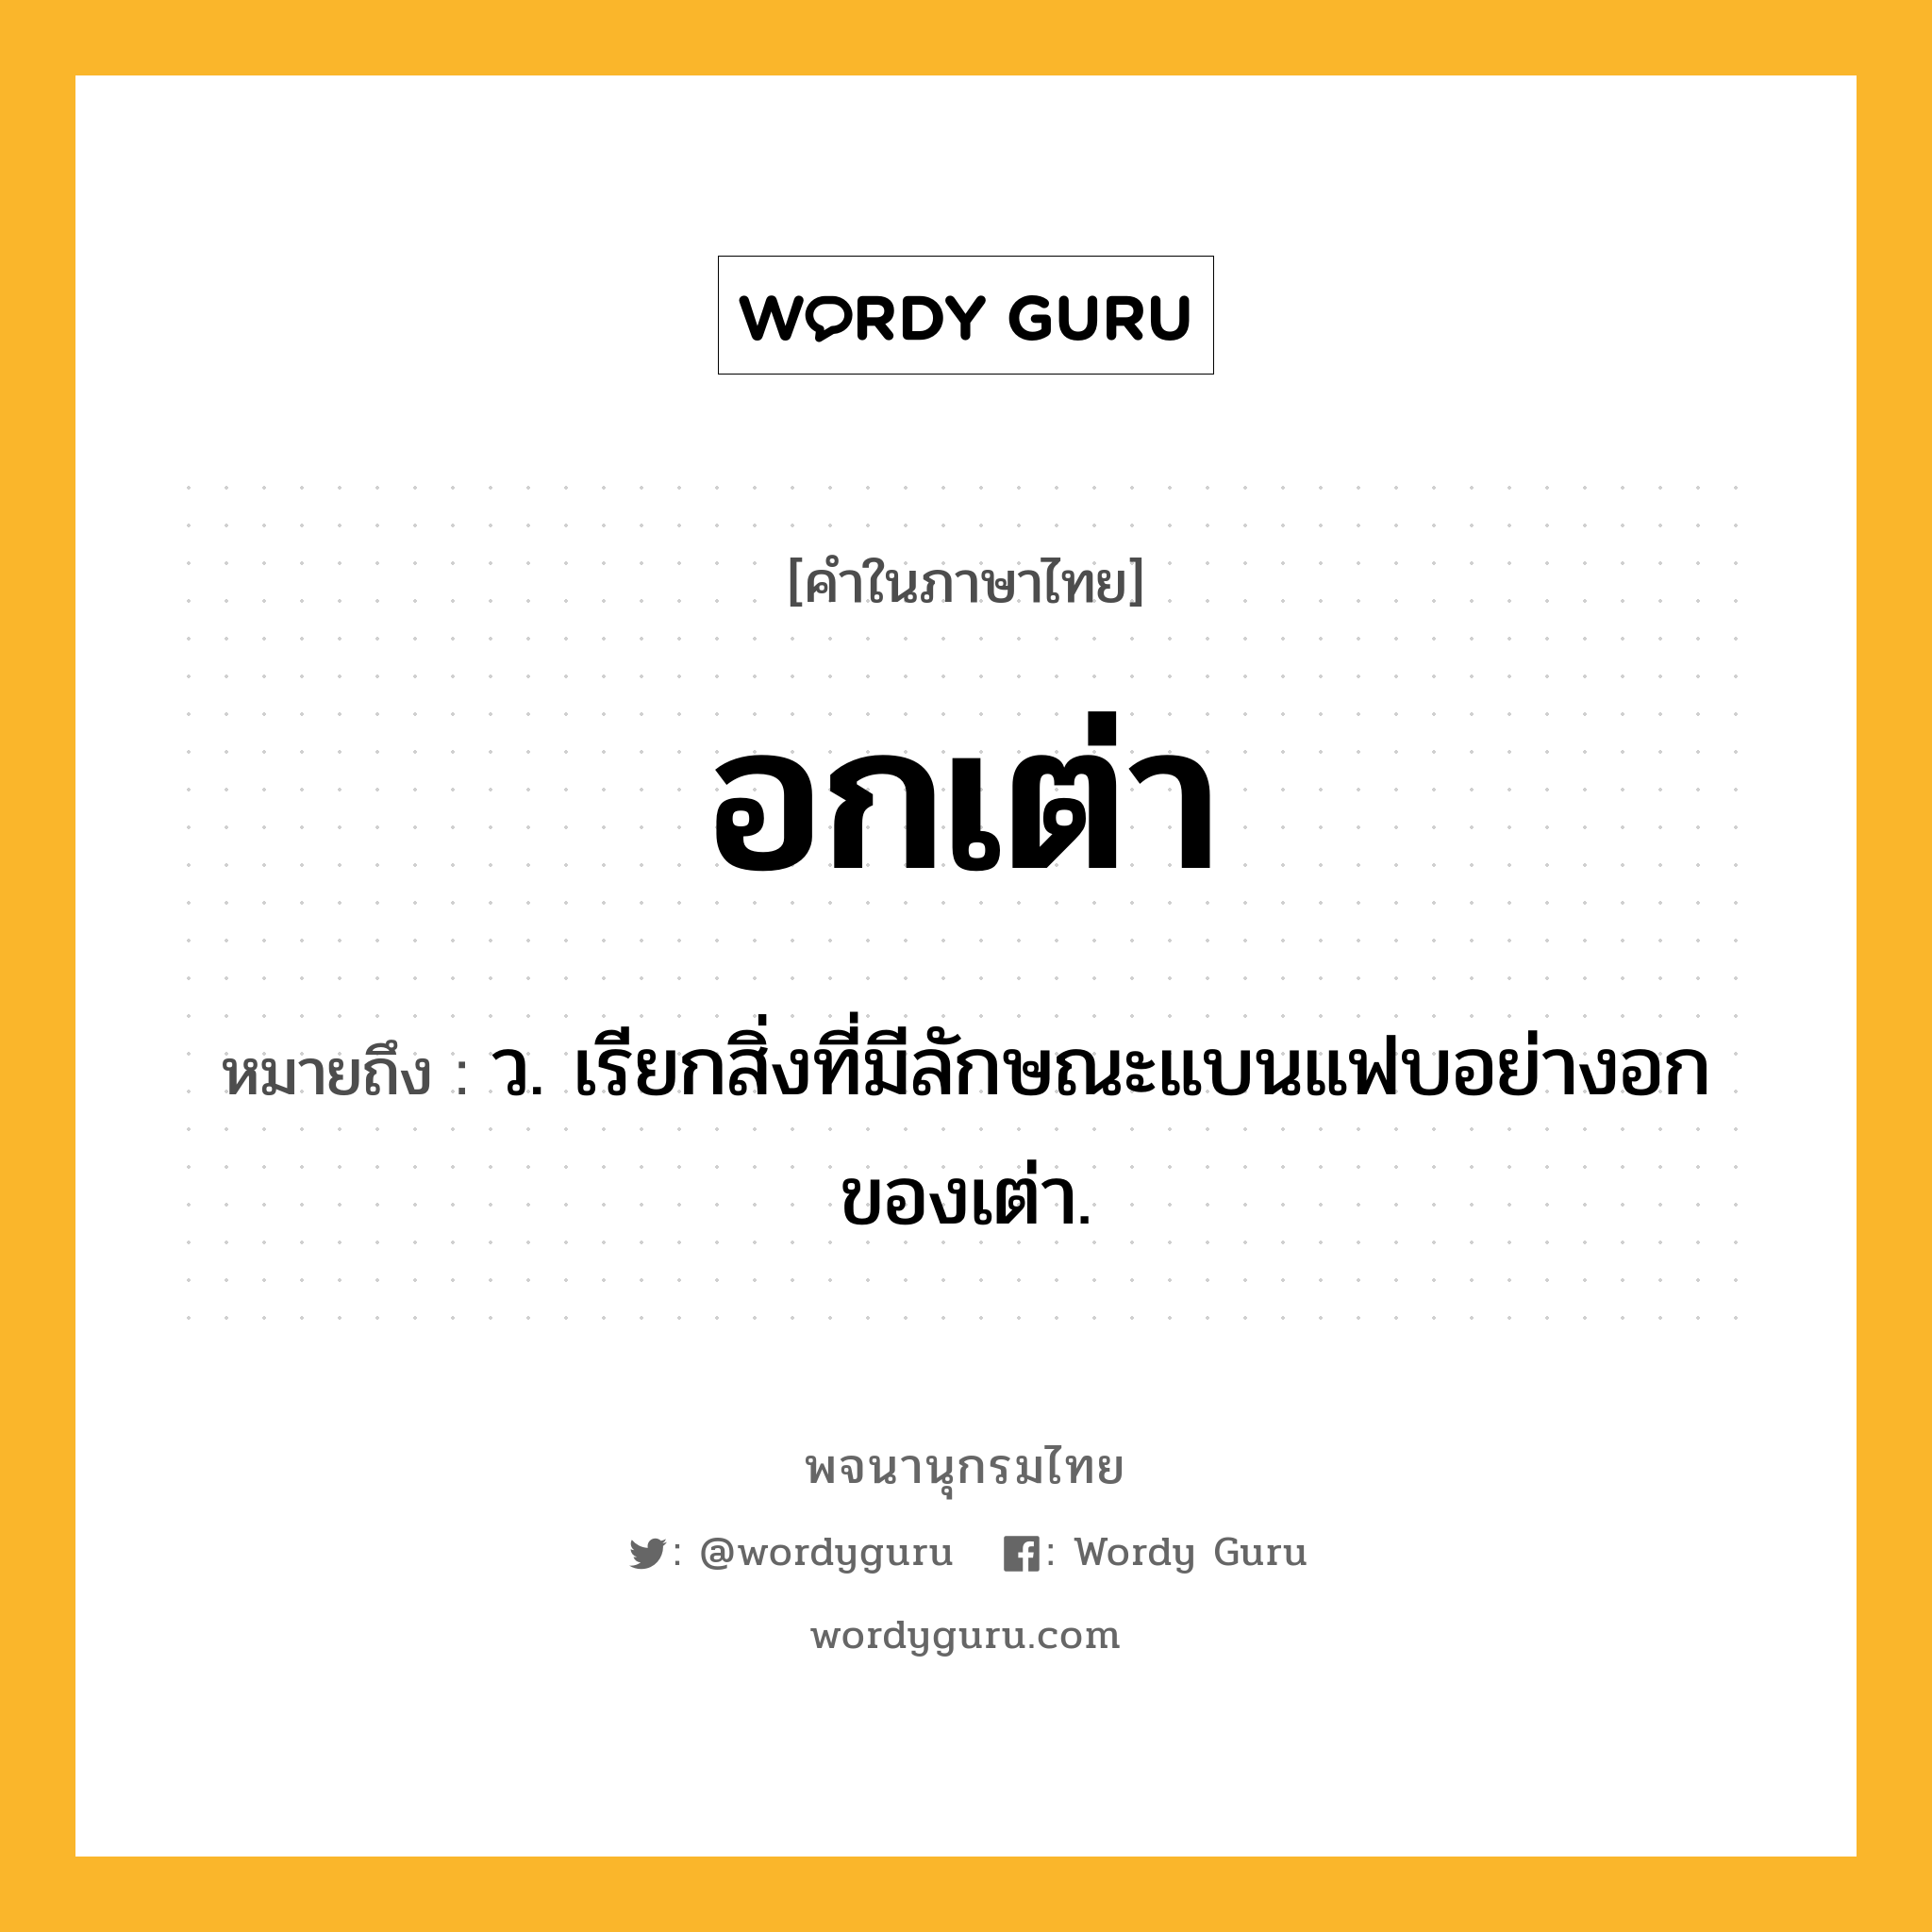 อกเต่า ความหมาย หมายถึงอะไร?, คำในภาษาไทย อกเต่า หมายถึง ว. เรียกสิ่งที่มีลักษณะแบนแฟบอย่างอกของเต่า.